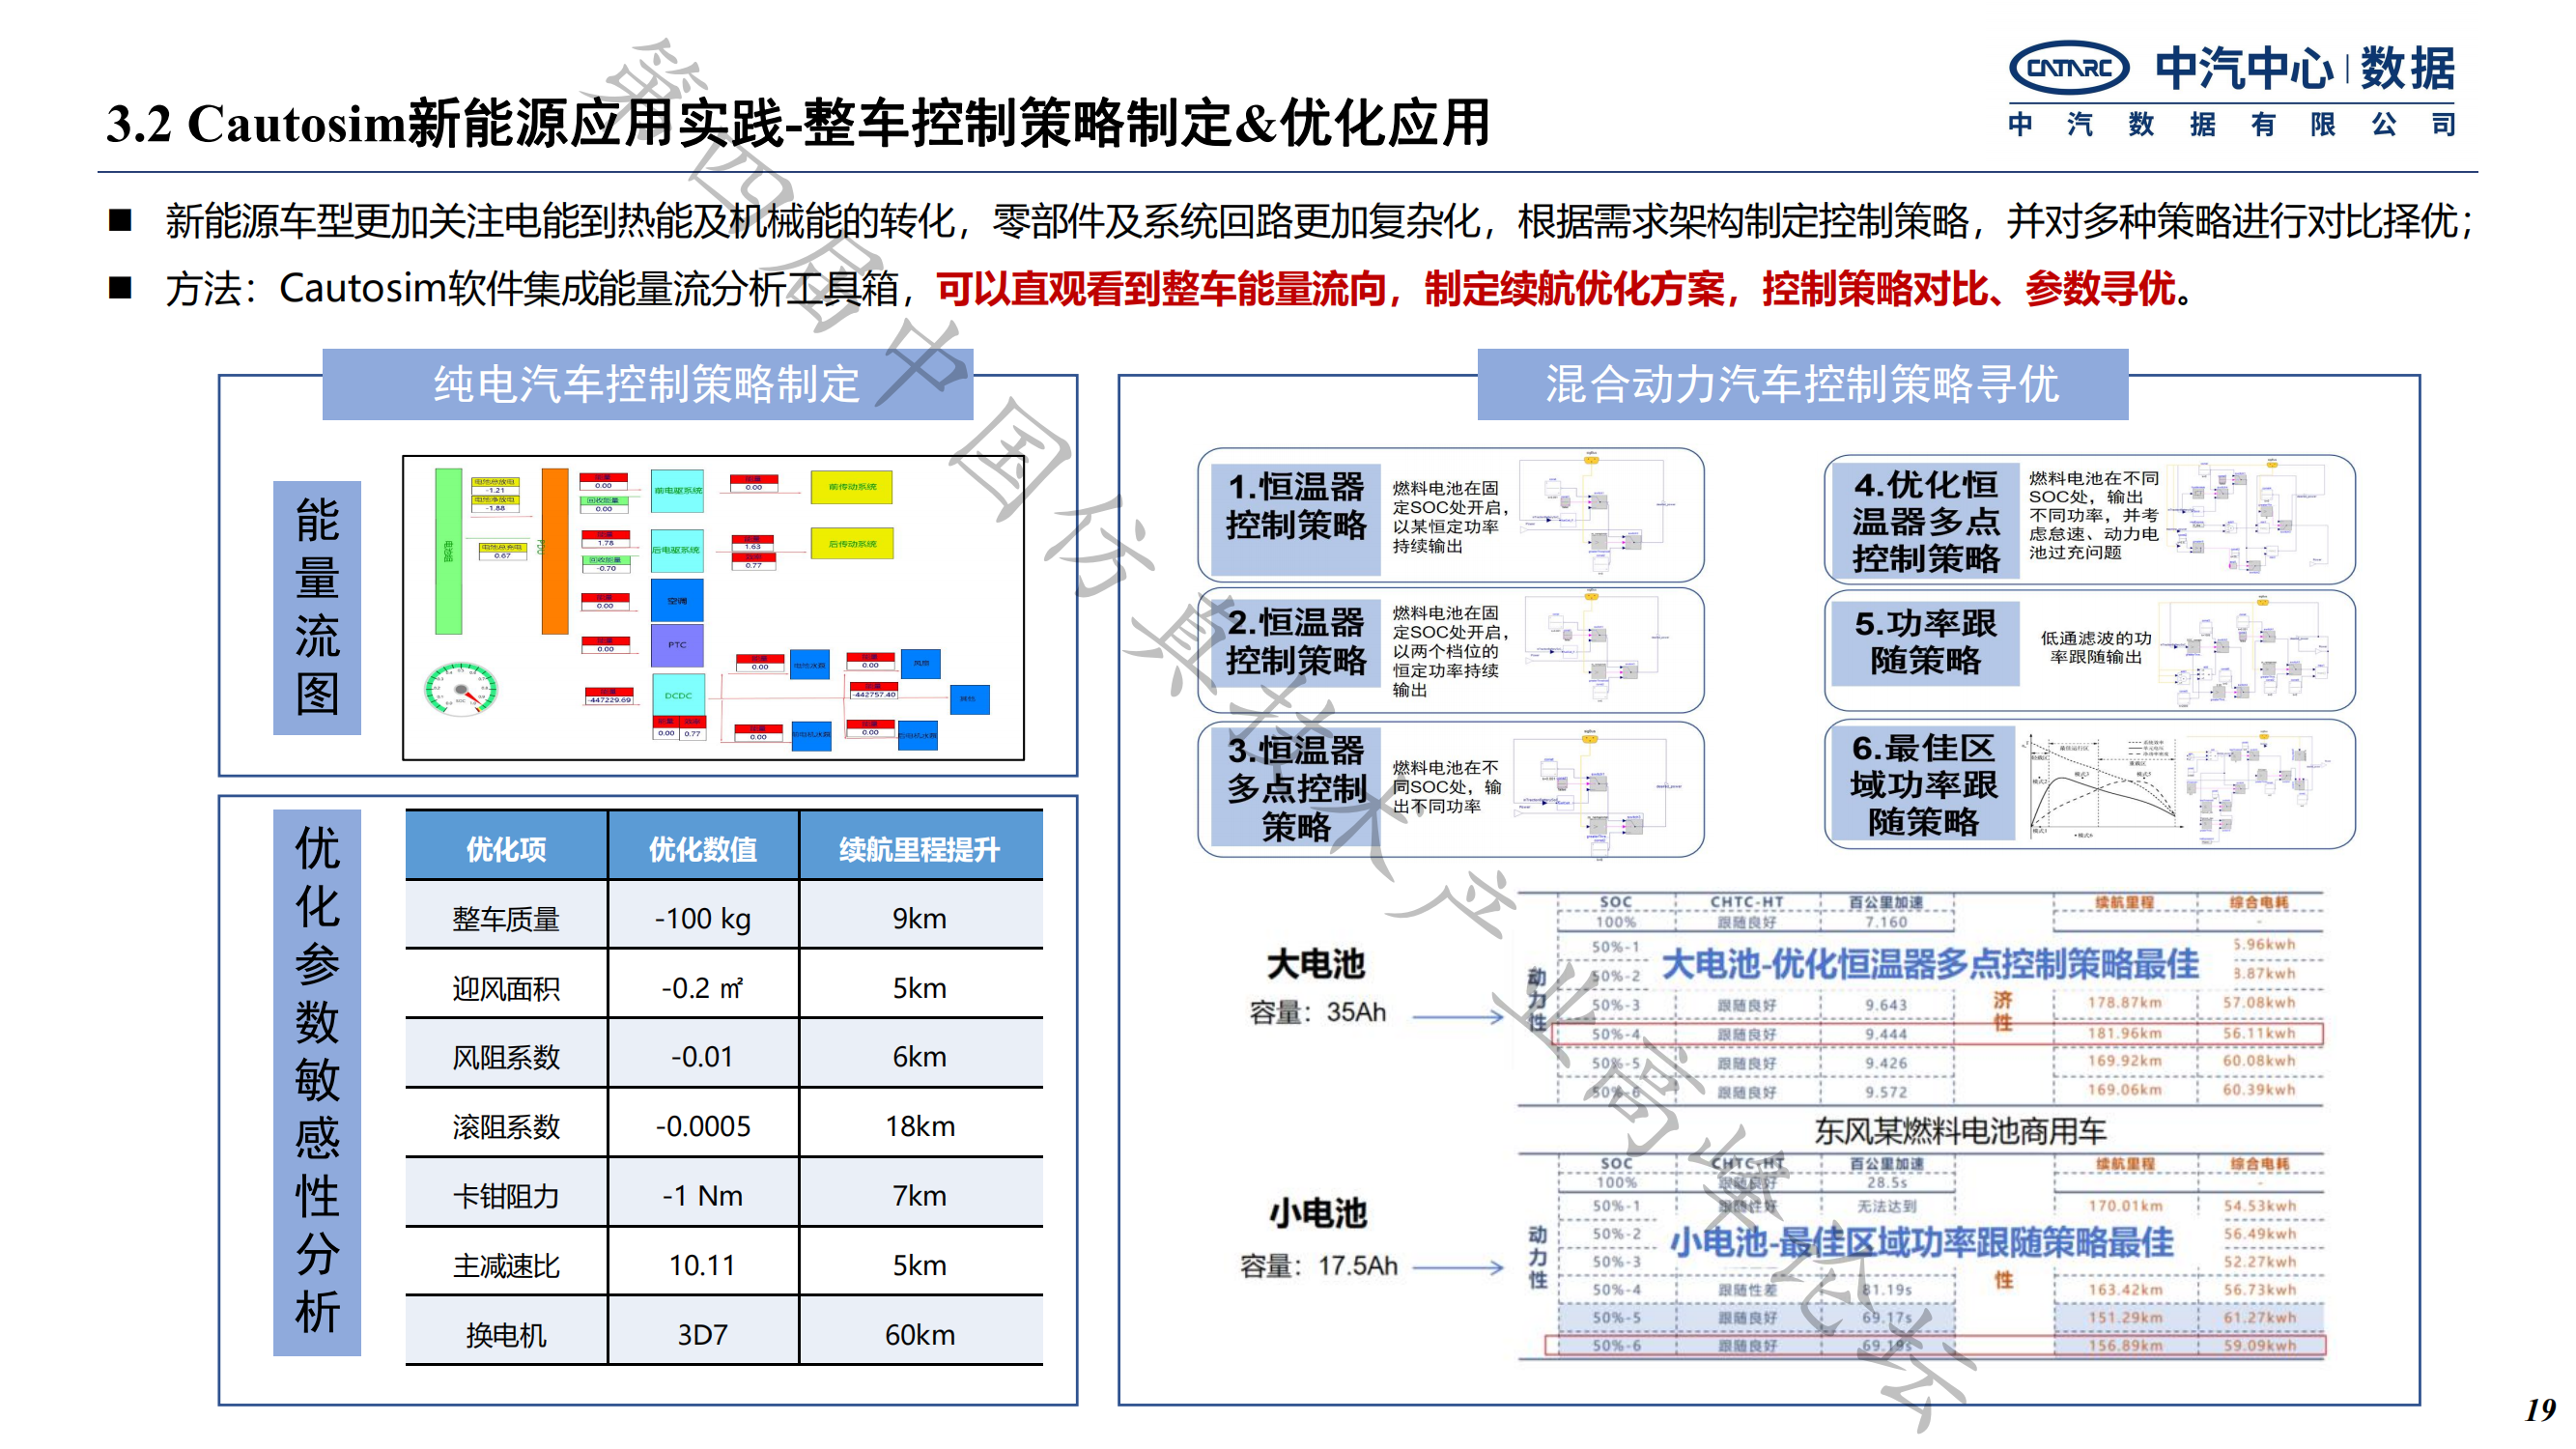 何绍清-国产系统仿真工具在新能源整车研发的应用实践-中汽数据(1)_18.png